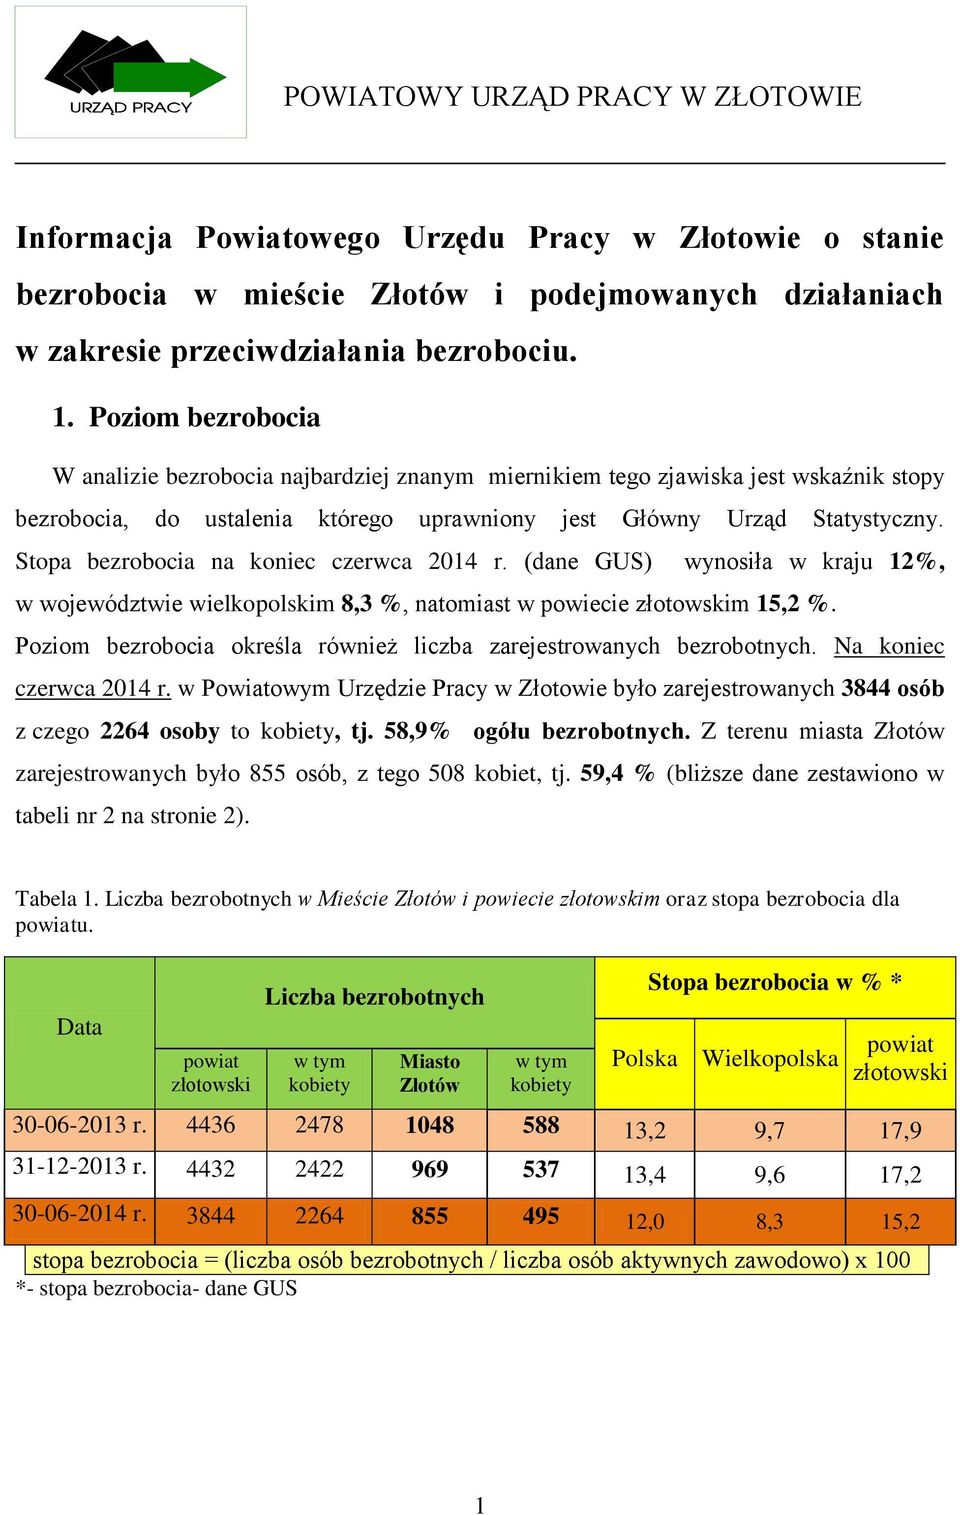 Stopa bezrobocia na koniec czerwca 2014 r. (dane GUS) wynosiła w kraju 12%, w województwie wielkopolskim 8,3 %, natomiast w powiecie złotowskim 15,2 %.